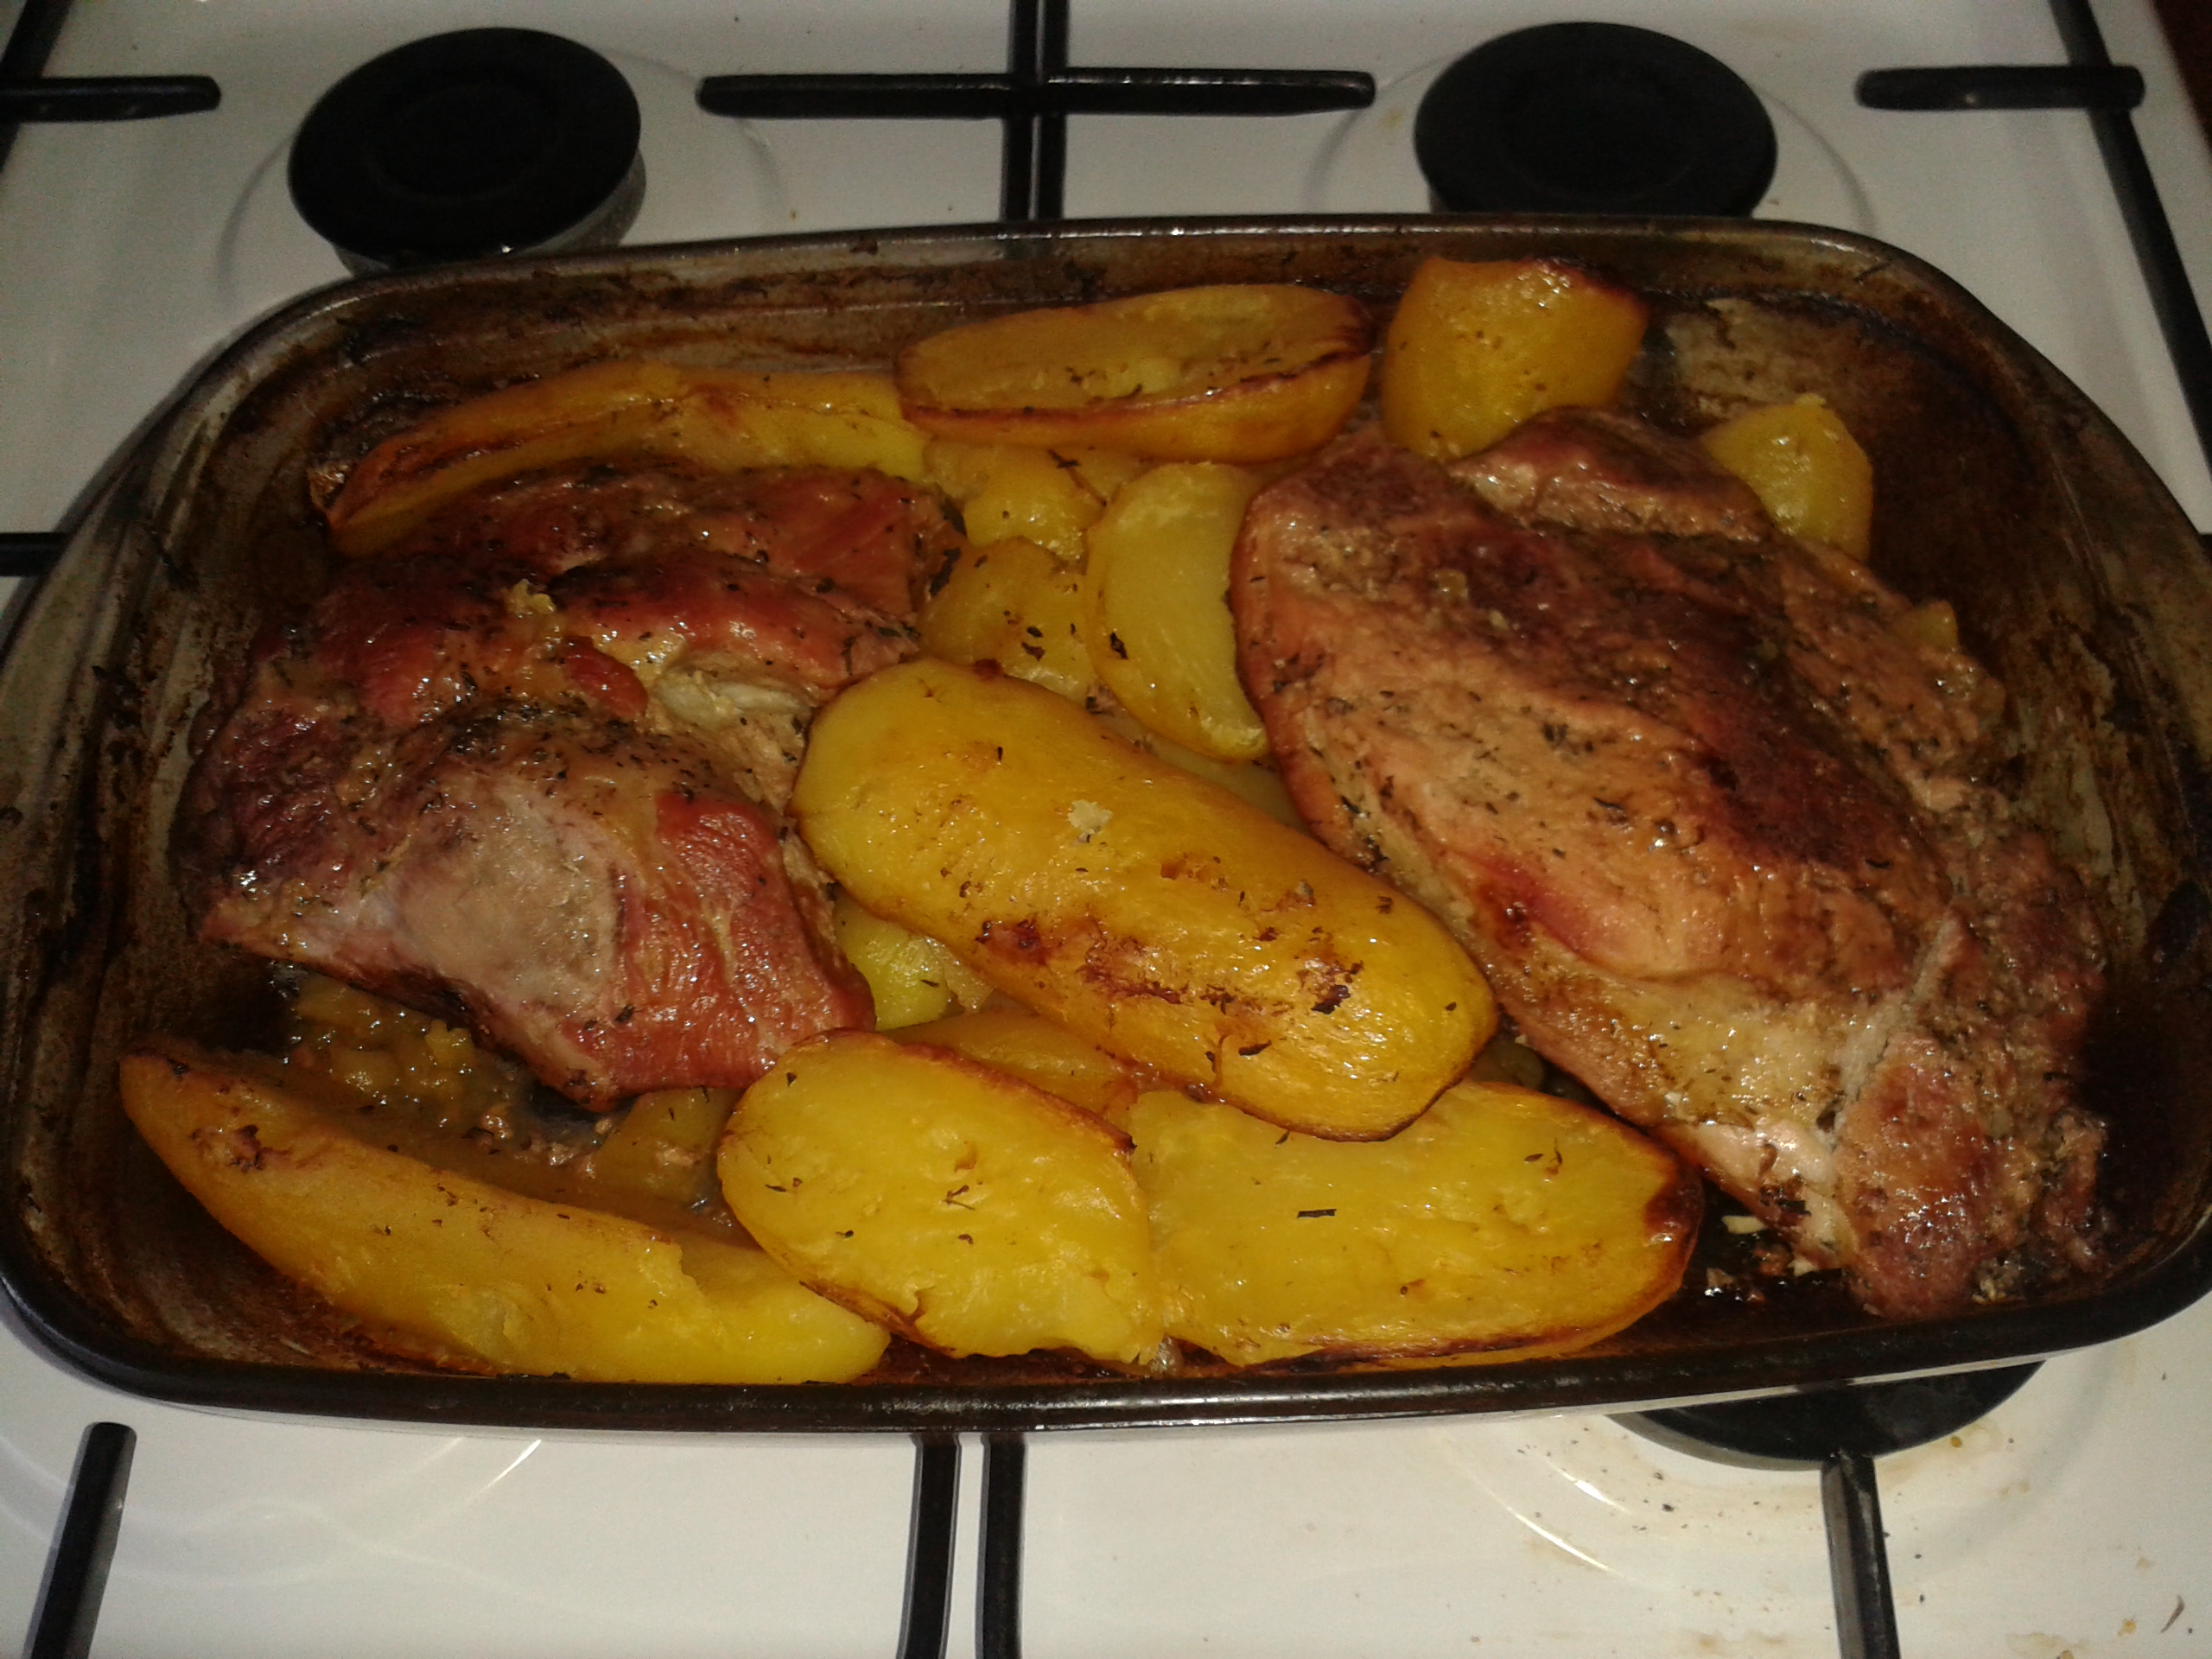 Carne de porc si cartofi la cuptor, deliciu culinar pentru o cina de neuitat in familie